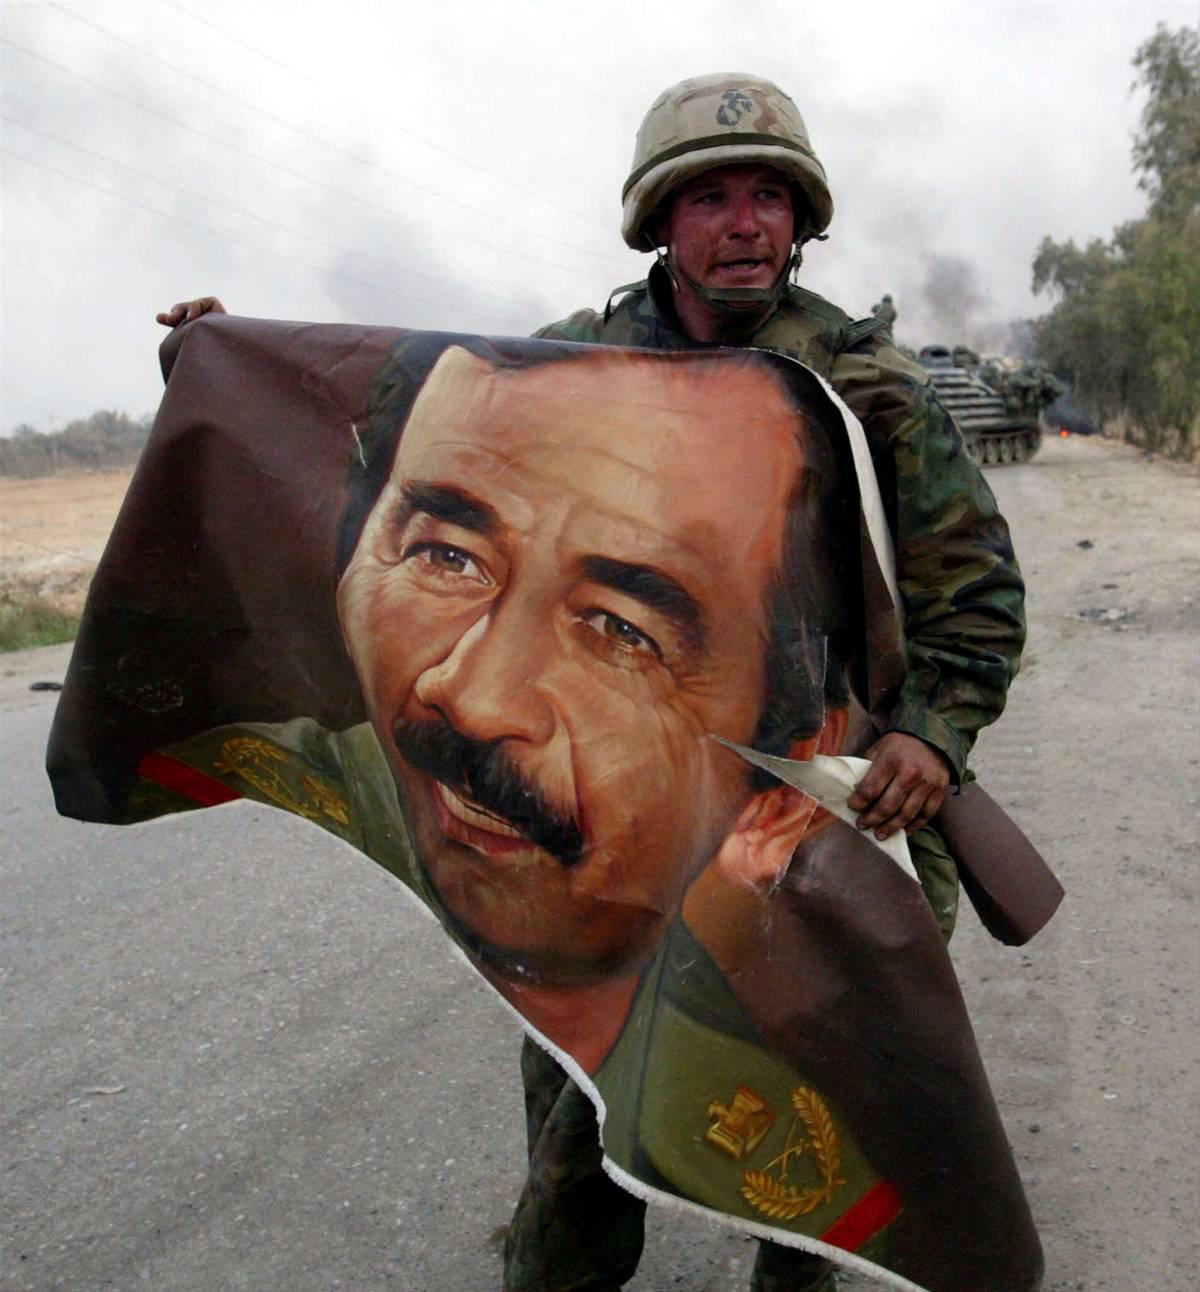 جندي أميركي يحمل صورة للرئيس العراقي الراحل صدام حسين بالقرب من جسر على دجلة جنوب بغداد (2003)